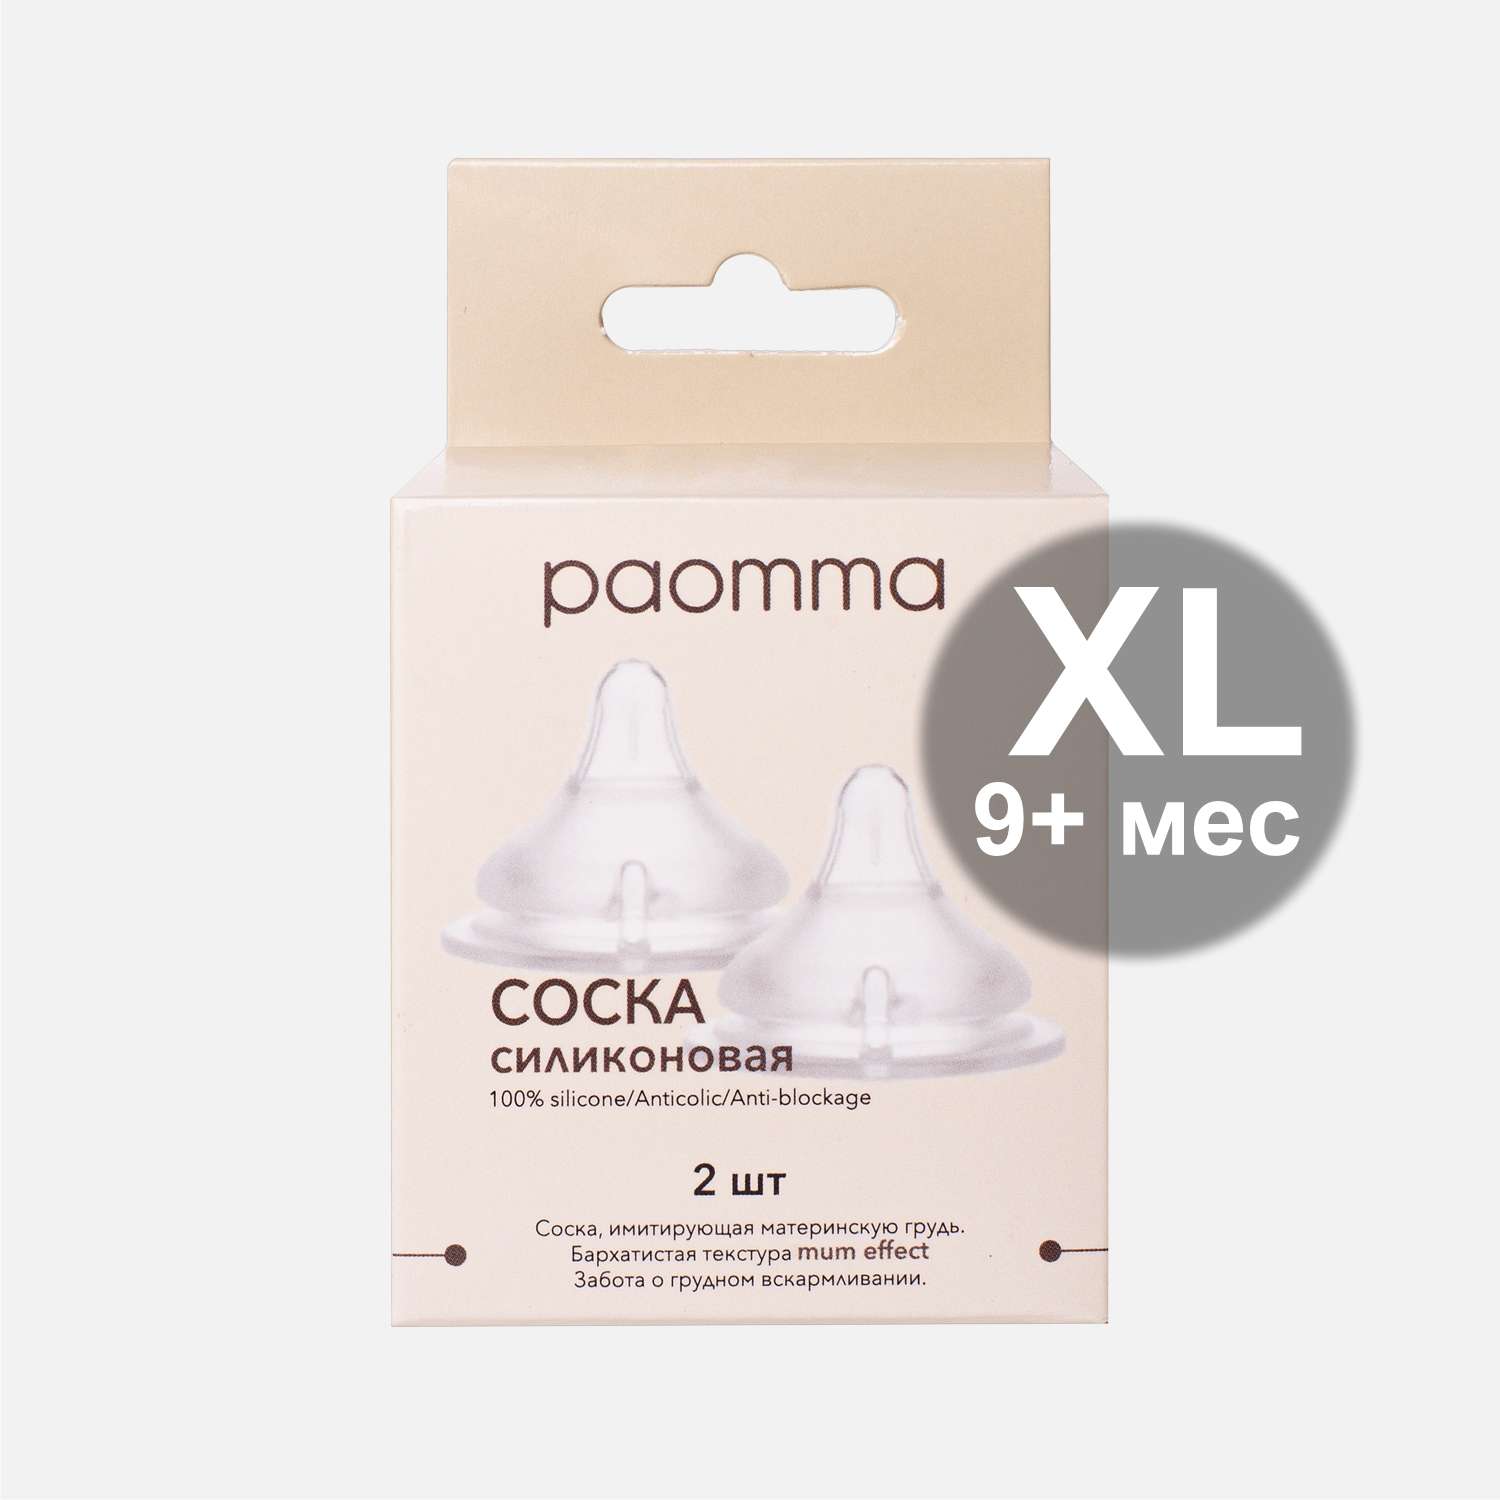 Соска для бутылочки paomma из силикона mum effect Anti-Colic XL для каш и смеси крестообразное отверстие 2шт - фото 5